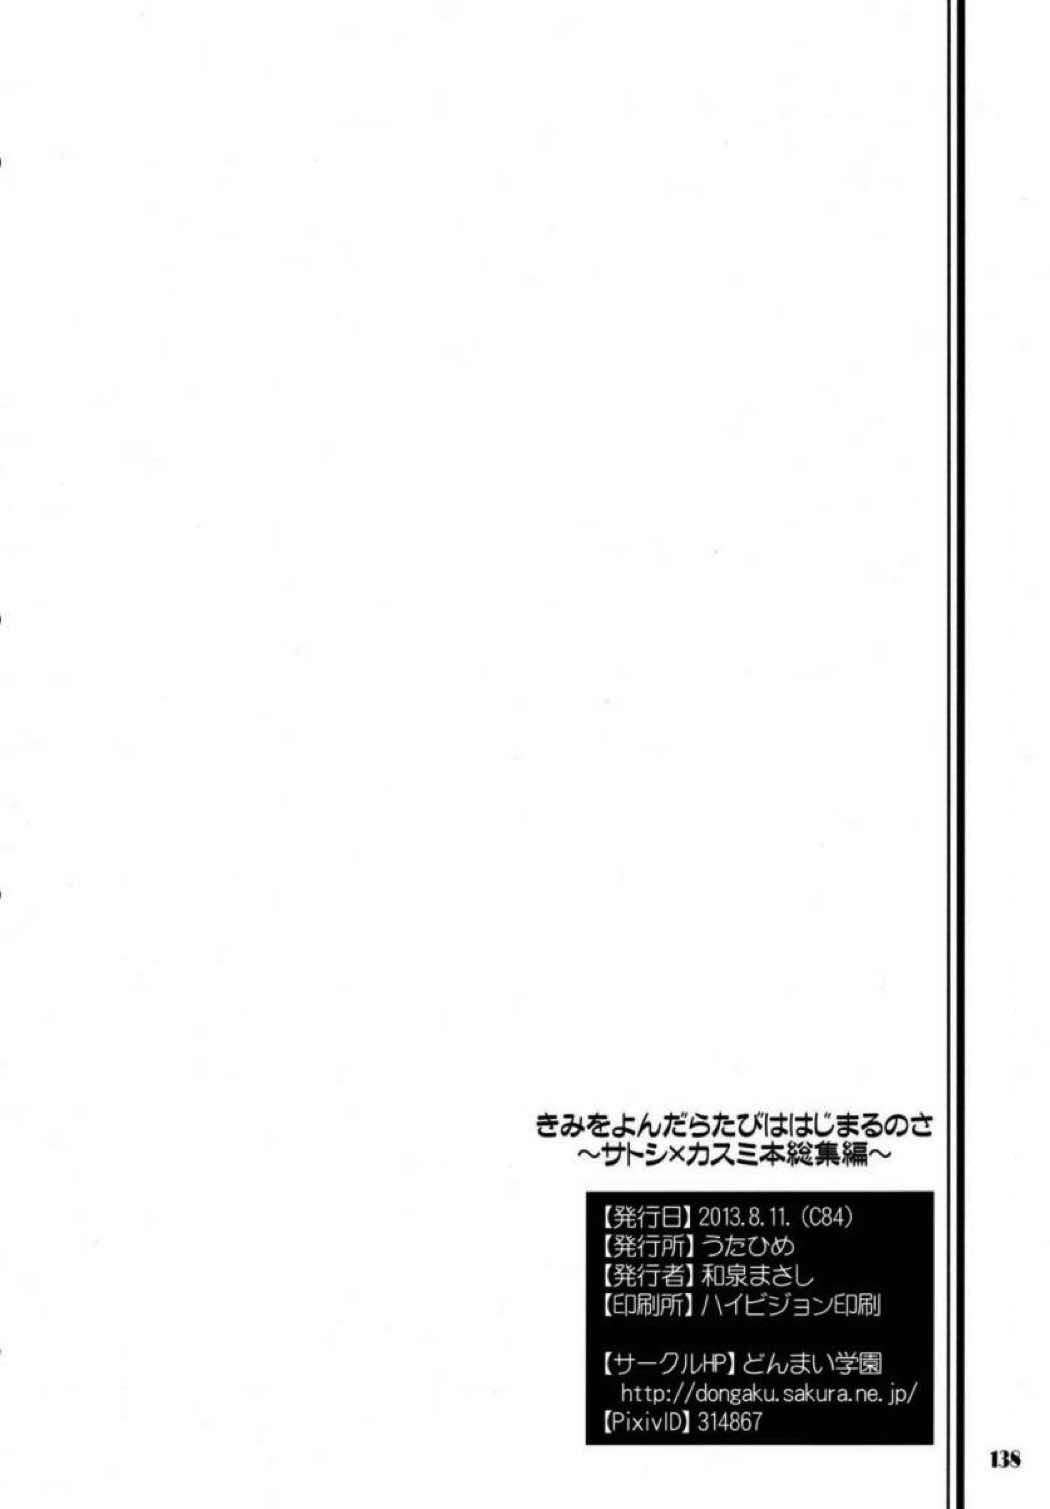 【ポケモン】サトシ×カスミのイチャラブエッチ総集本！の画像137枚目